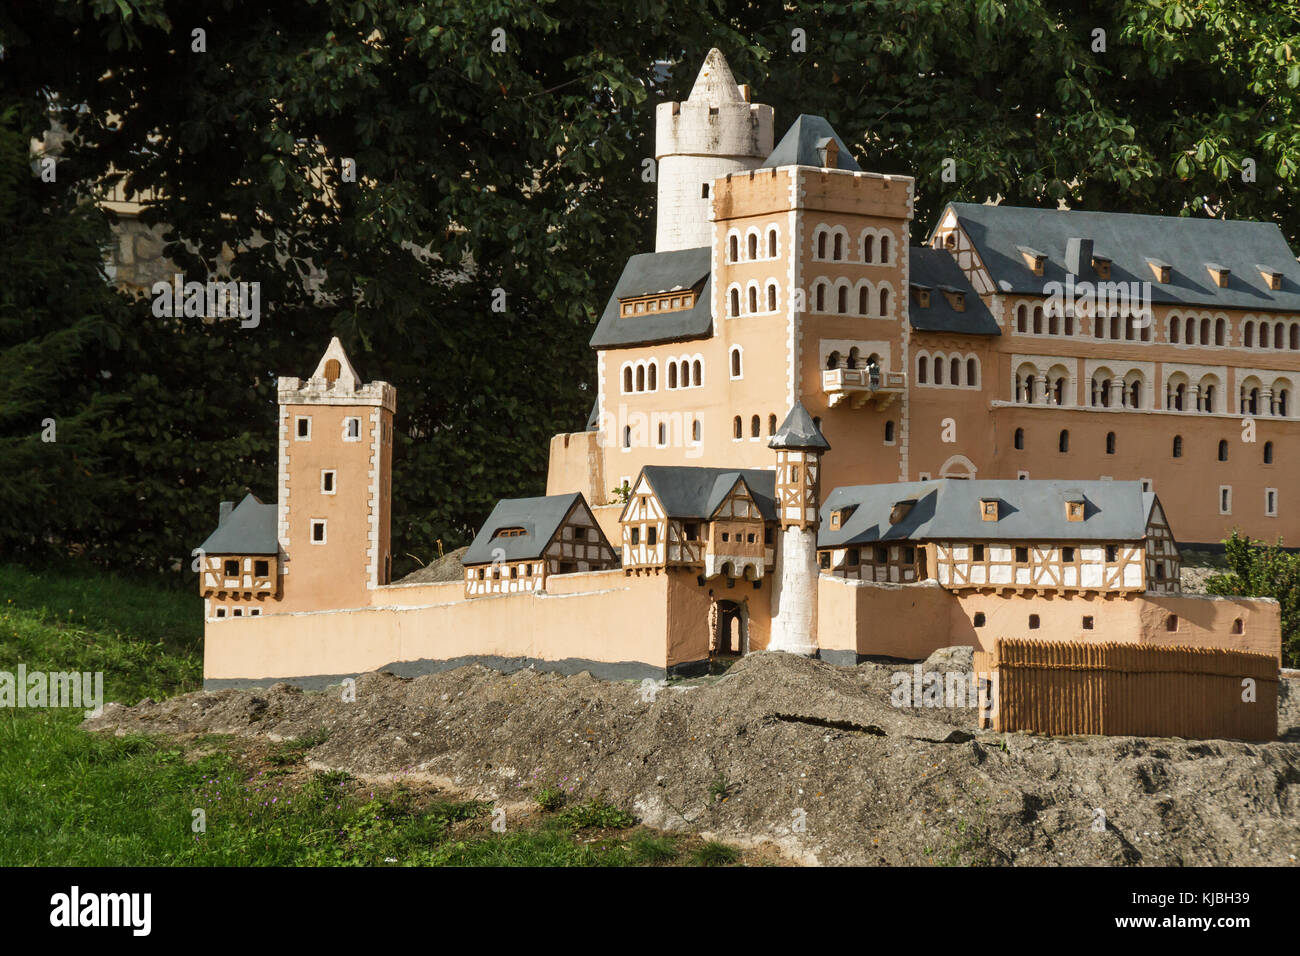 Modello der Burg anhalt a ballenstedt harz Foto Stock